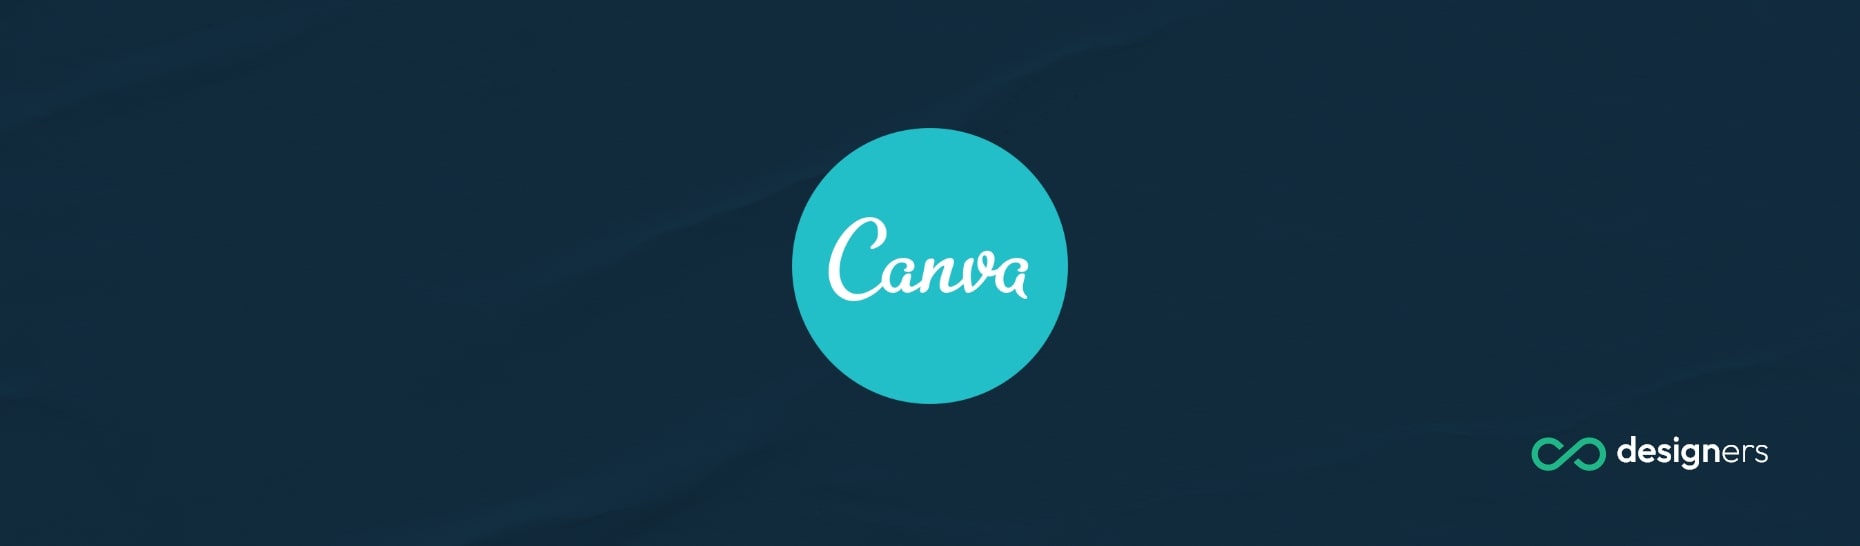 Can Canva Build Websites?